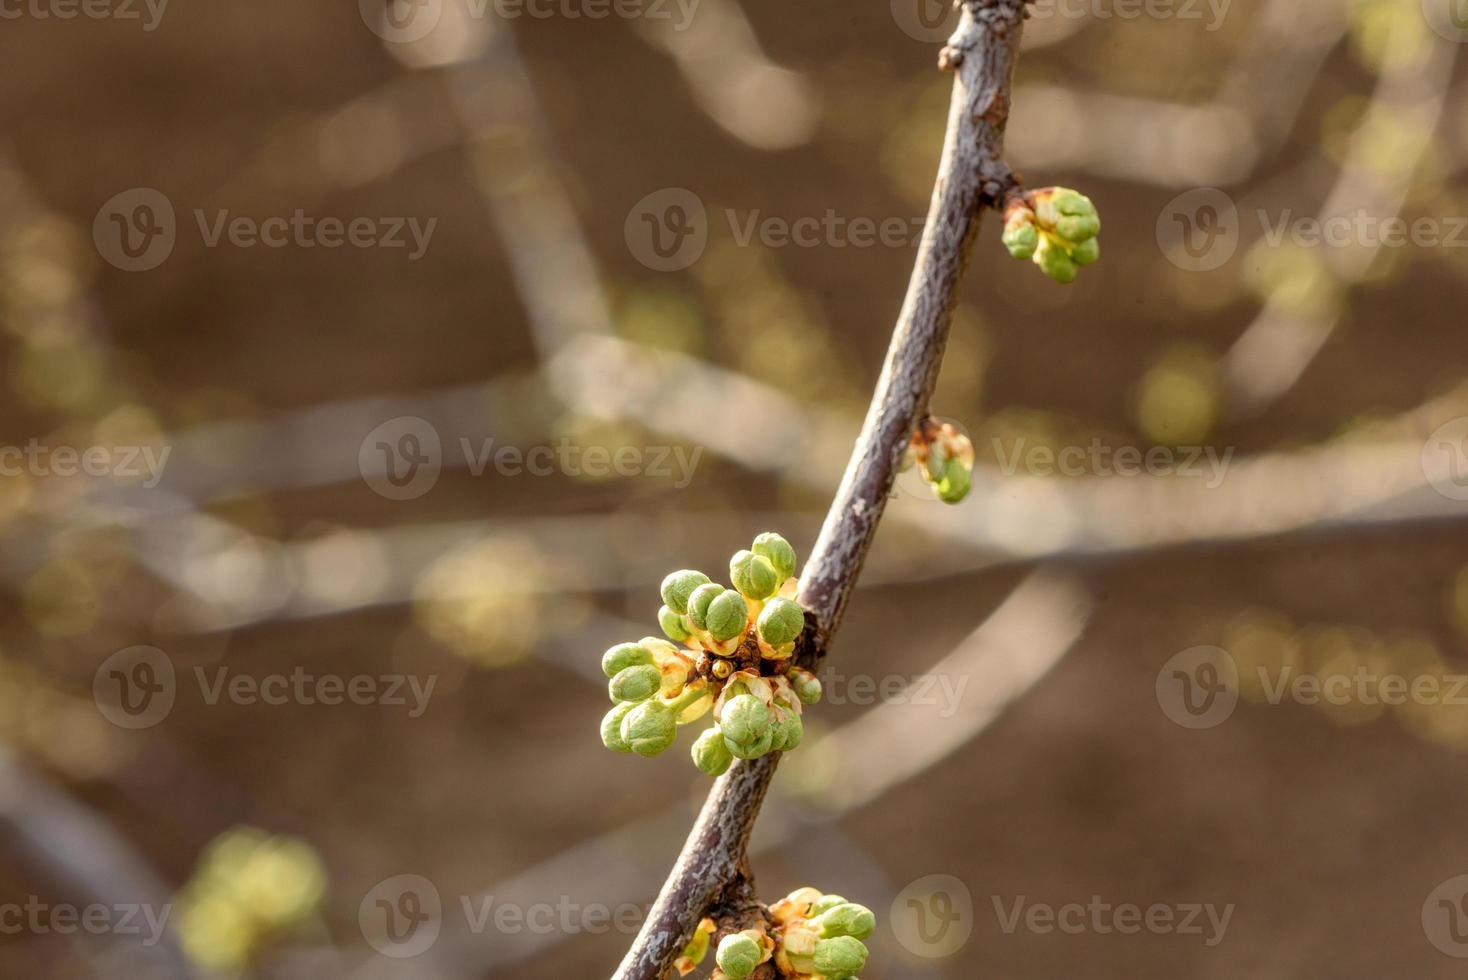 Geschwollene Frühlingsknospen an den Ästen eines Baumes aus nächster Nähe. Ast vor der Blüte foto